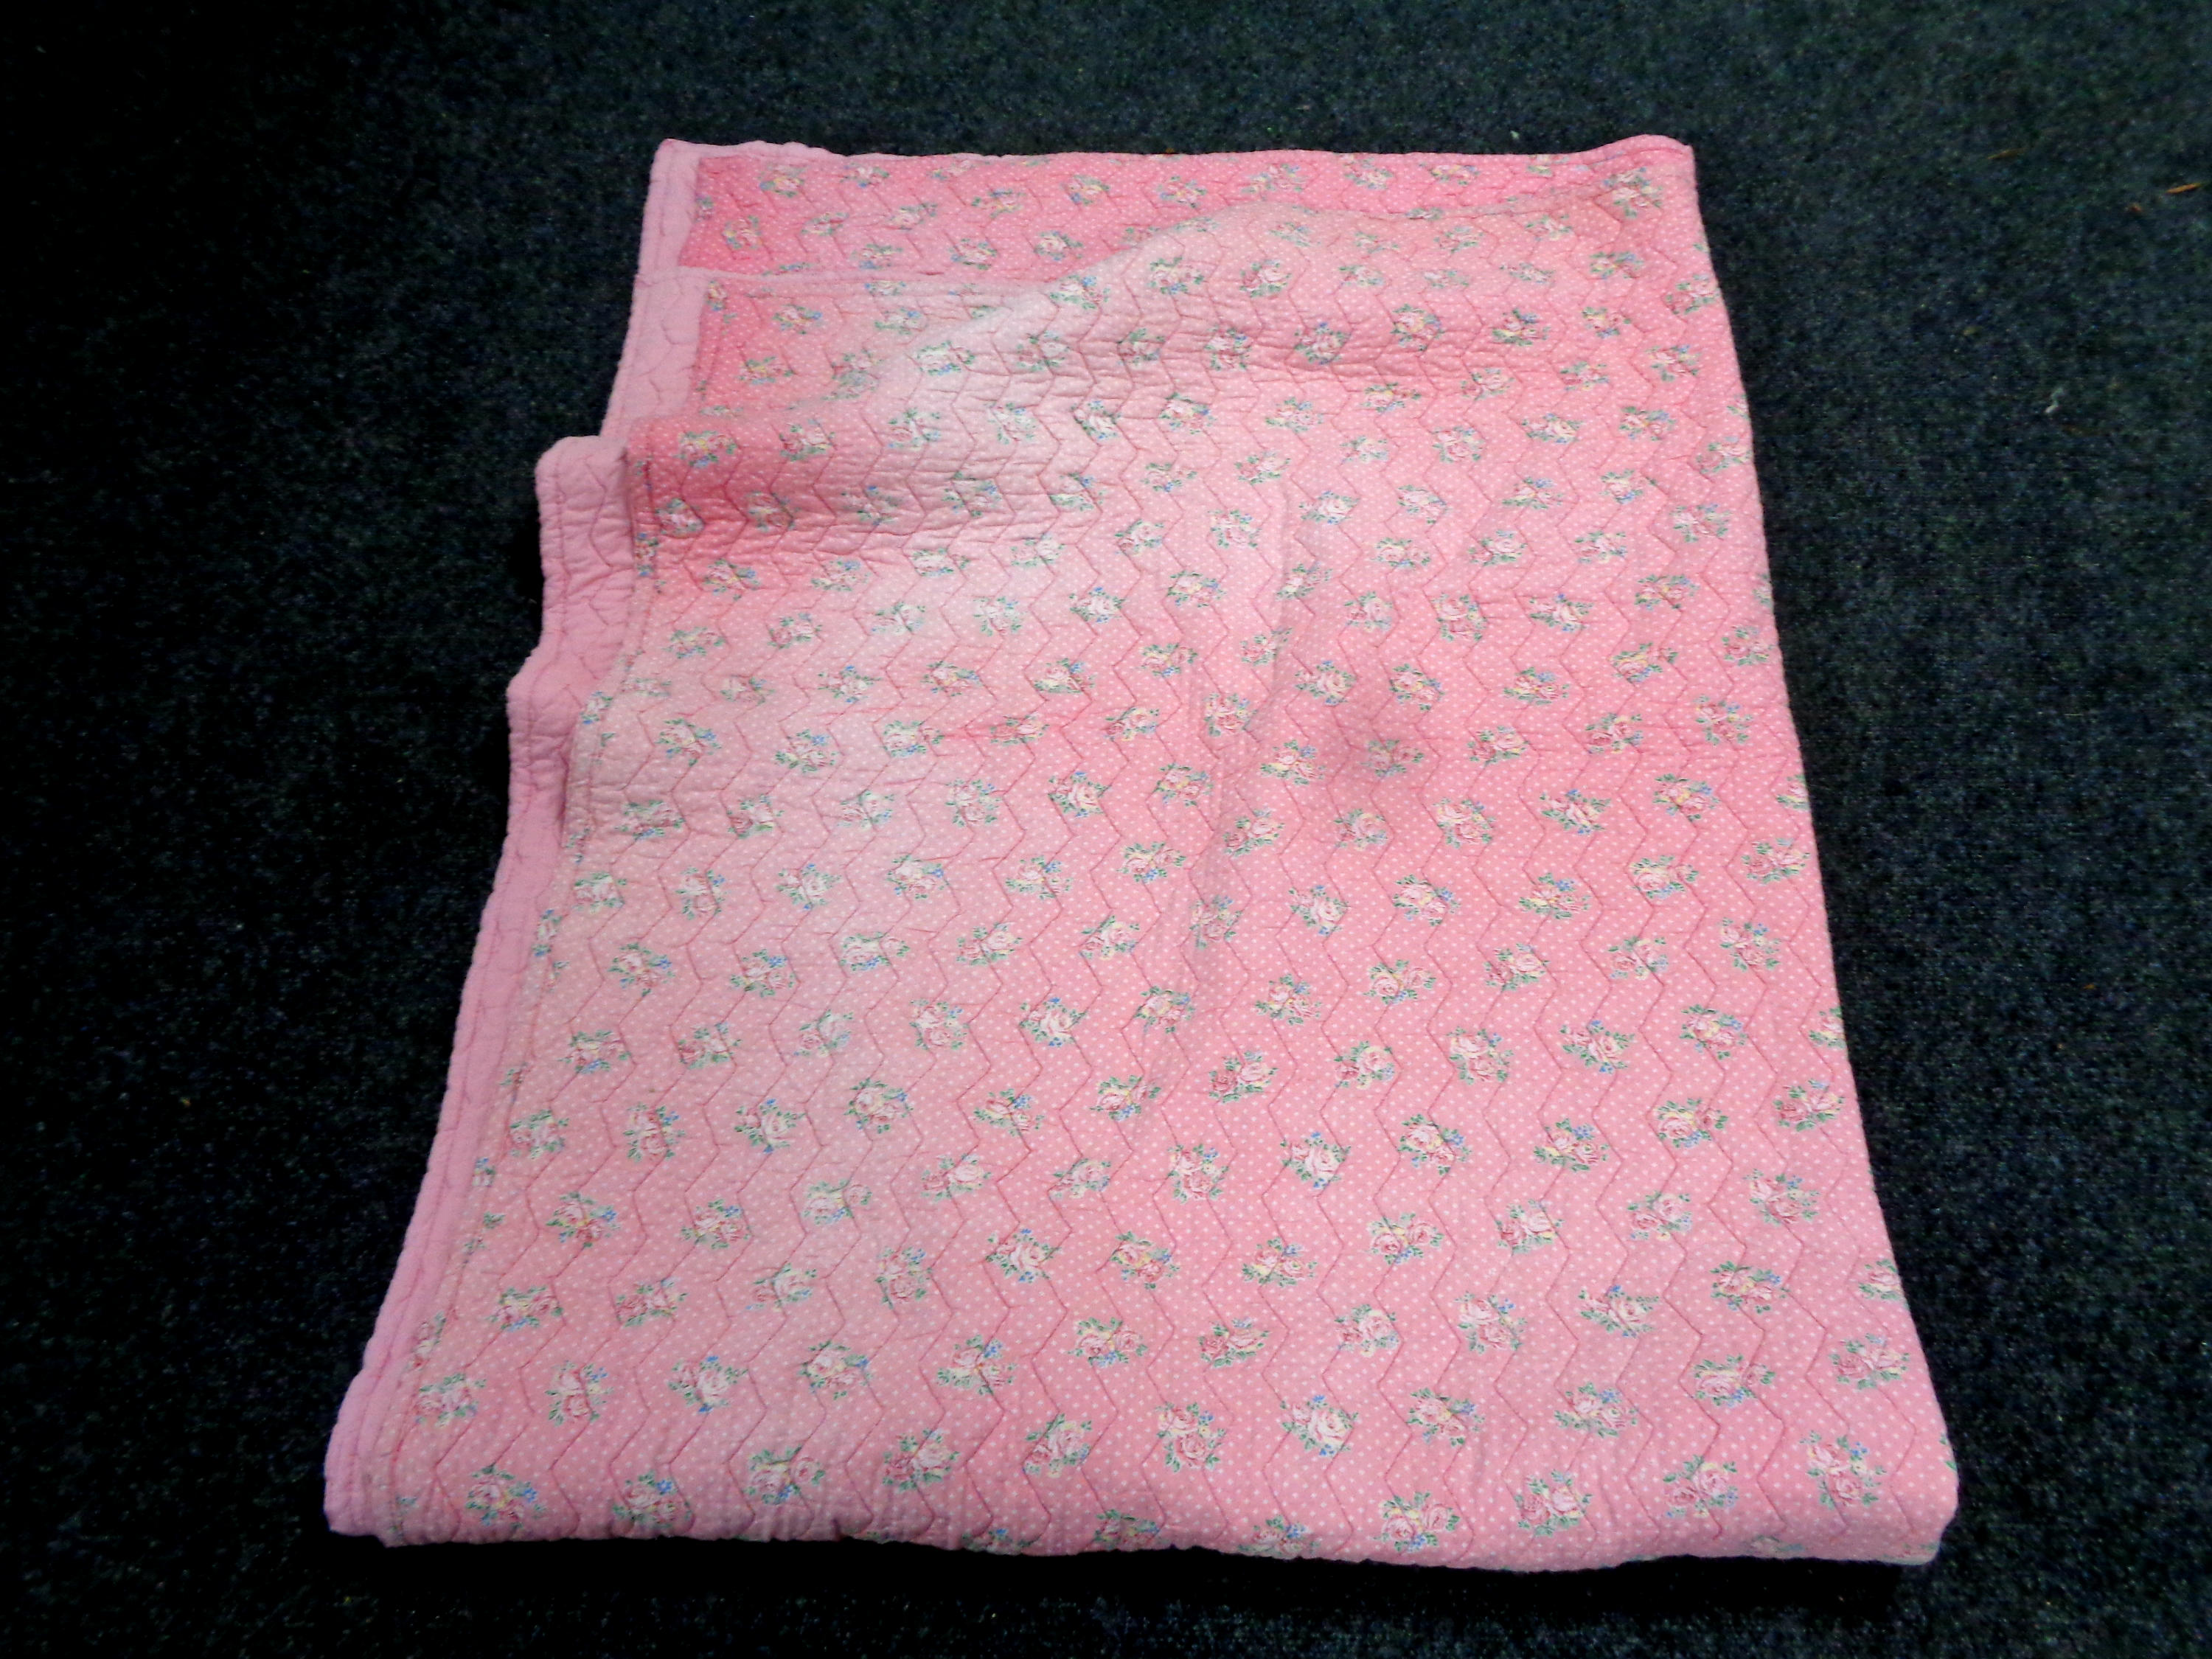 A pink Durham quilt